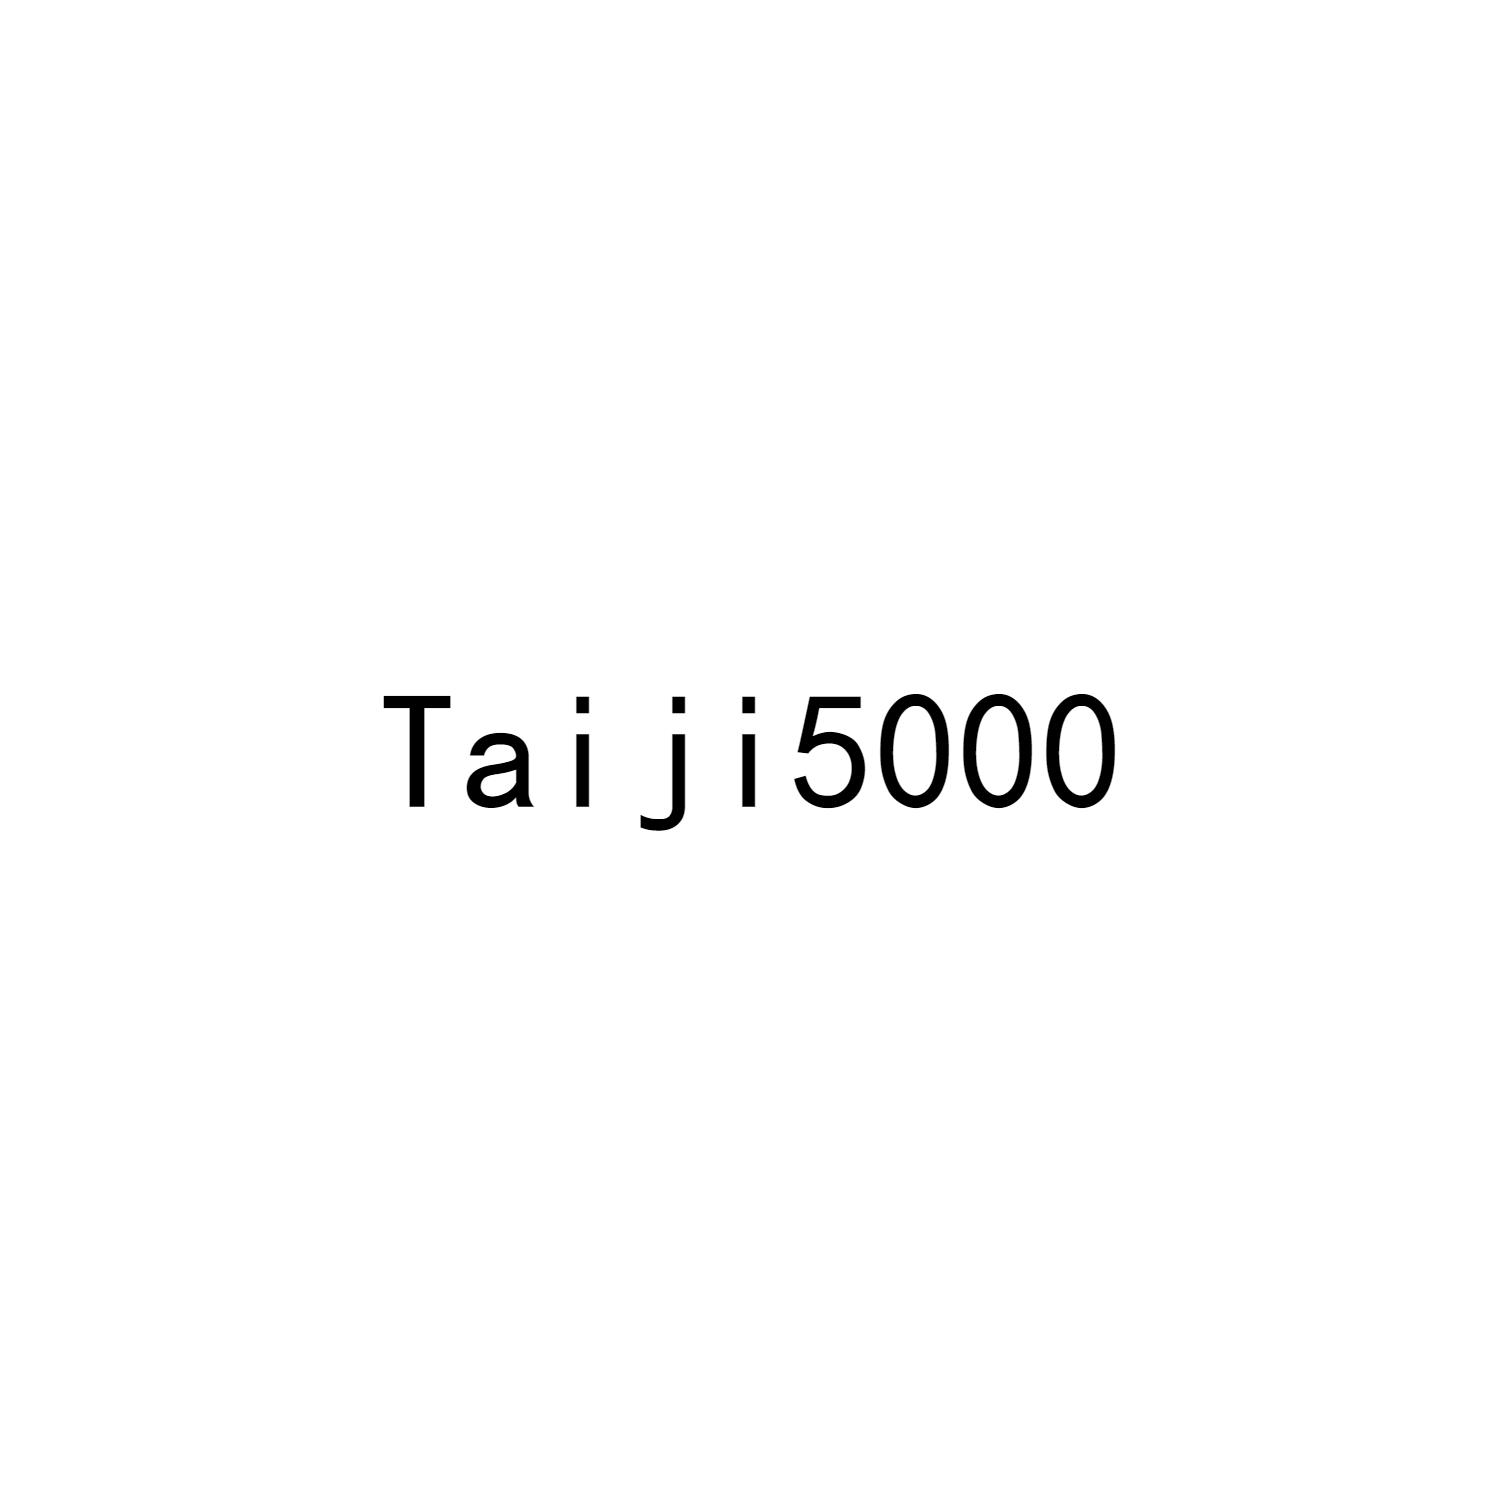 TAIJI5000